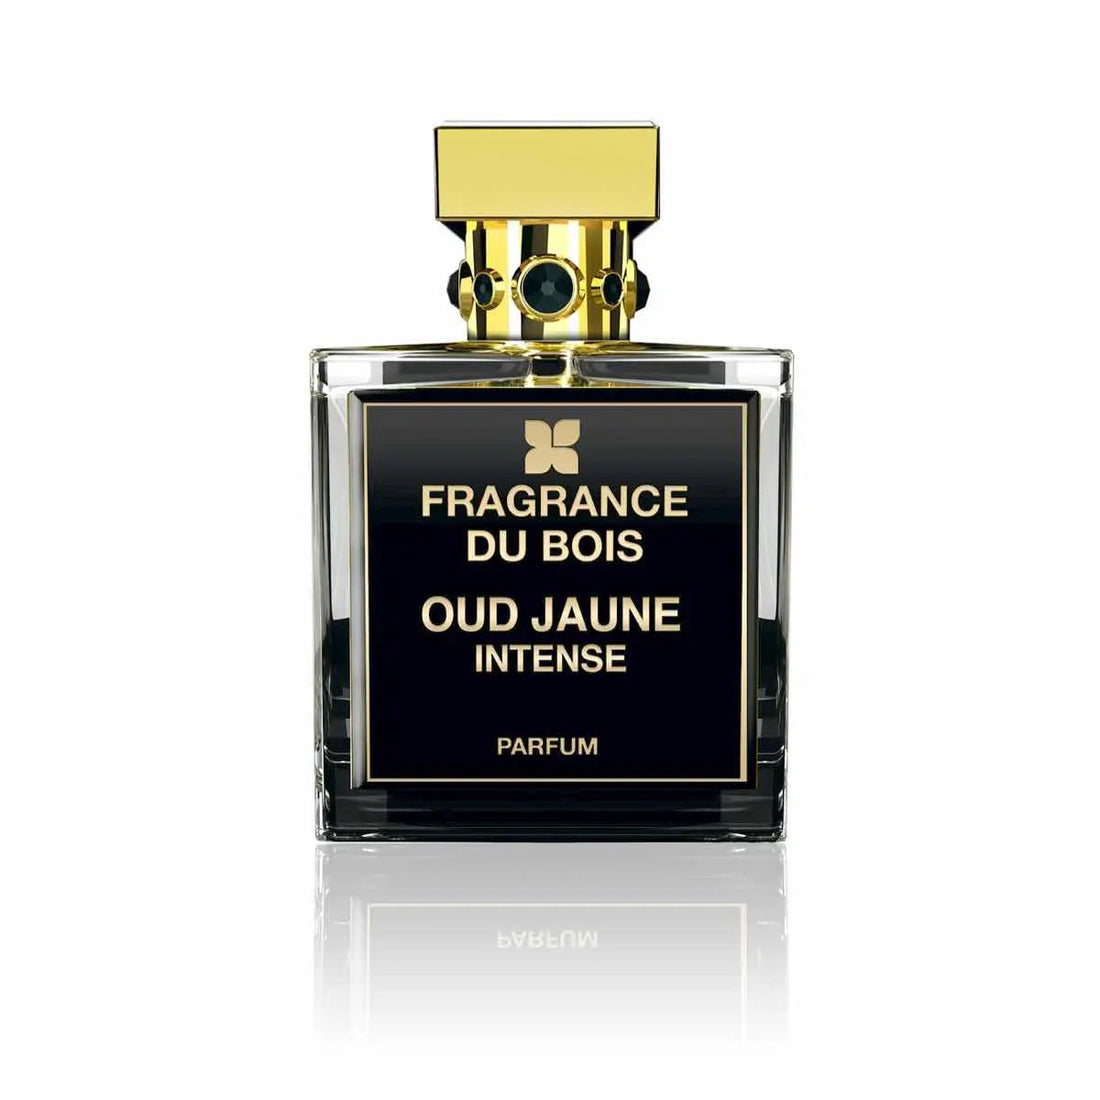 Fragrance du bois Oud Jaune 浓烈香水 - 100 毫升